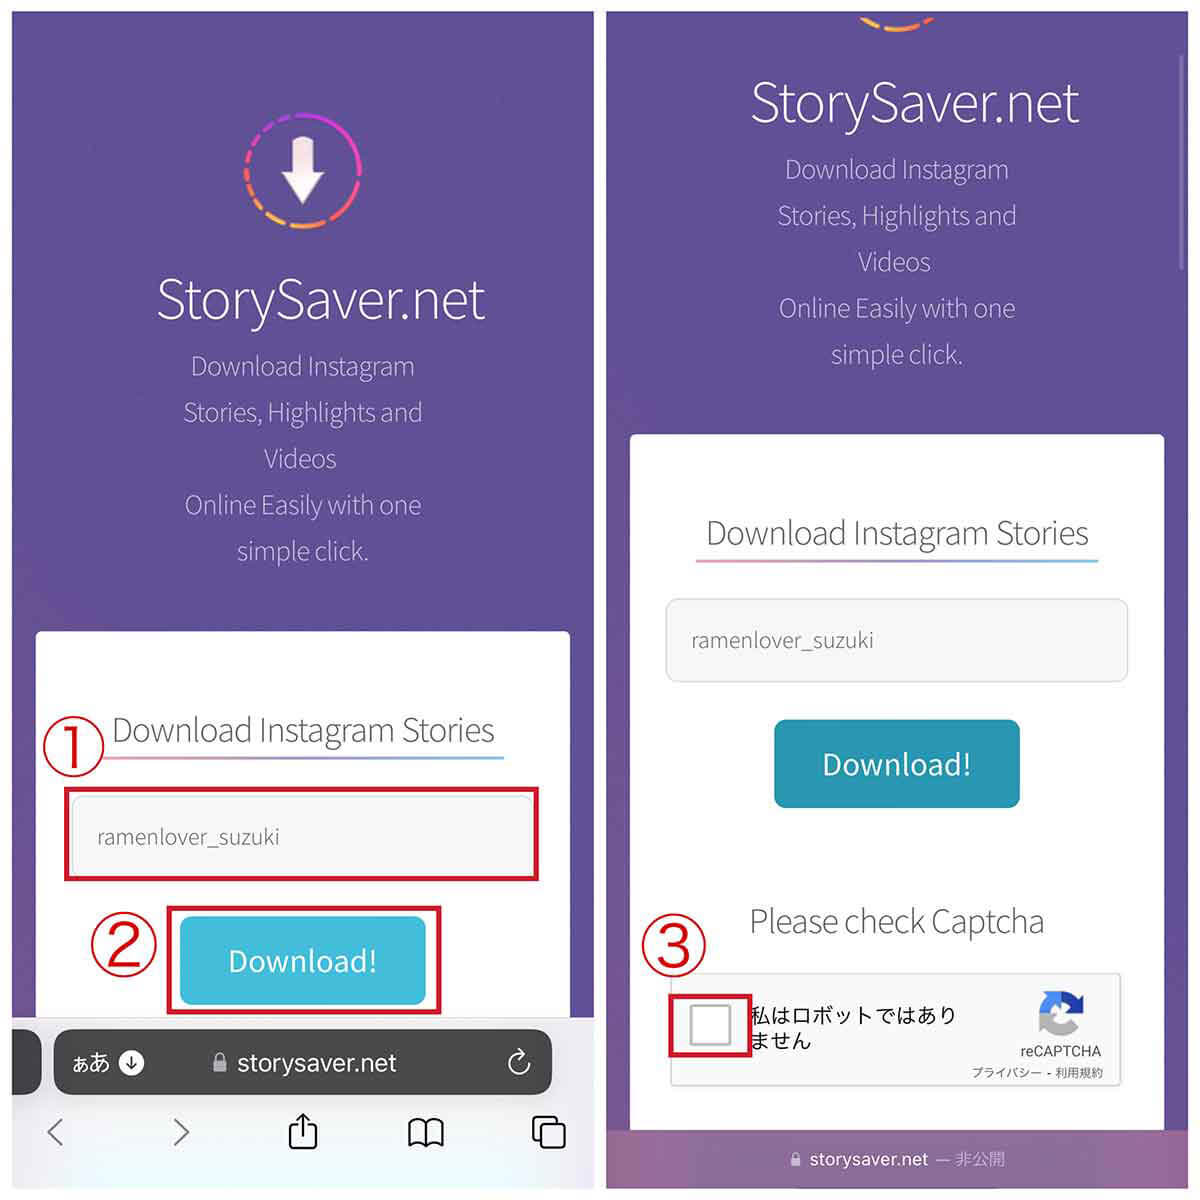 【外部サイト】StorySaver.netを利用する1